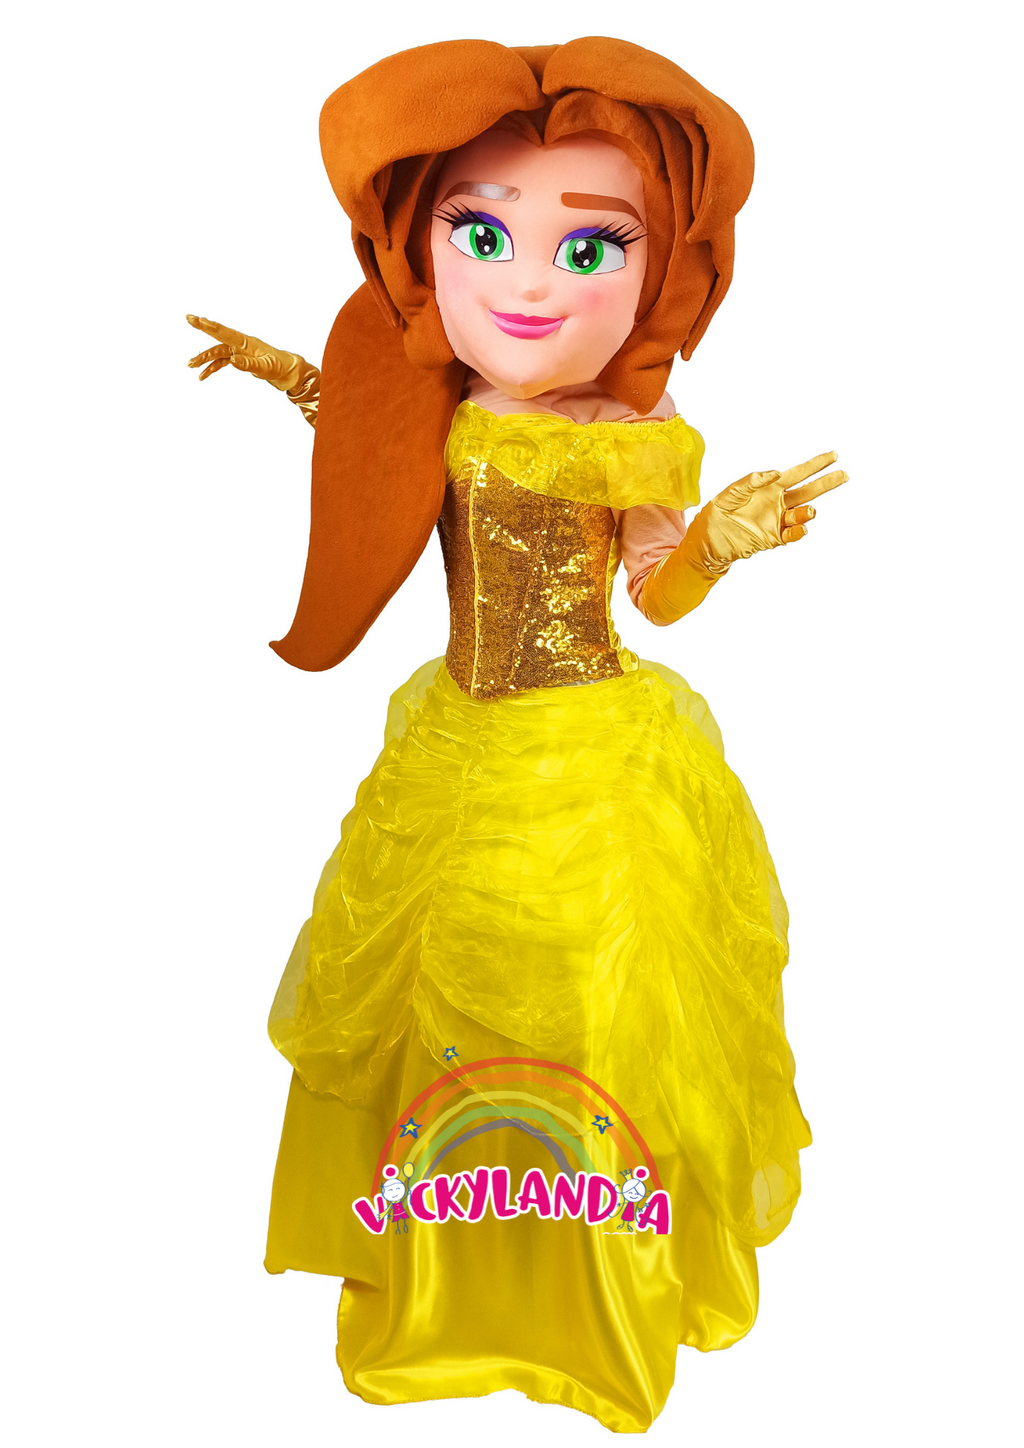 Descubre la magia de nuestro muñeco publicitario de Princesa Dorada en Vickylandia. Son disfraces cabezones perfectos para fiestas infantiles, shows, cumpleaños, estrategias publicitarias, carnavales, fiestas patronales, espectáculos, cabalgatas y cualquier tipo de evento.